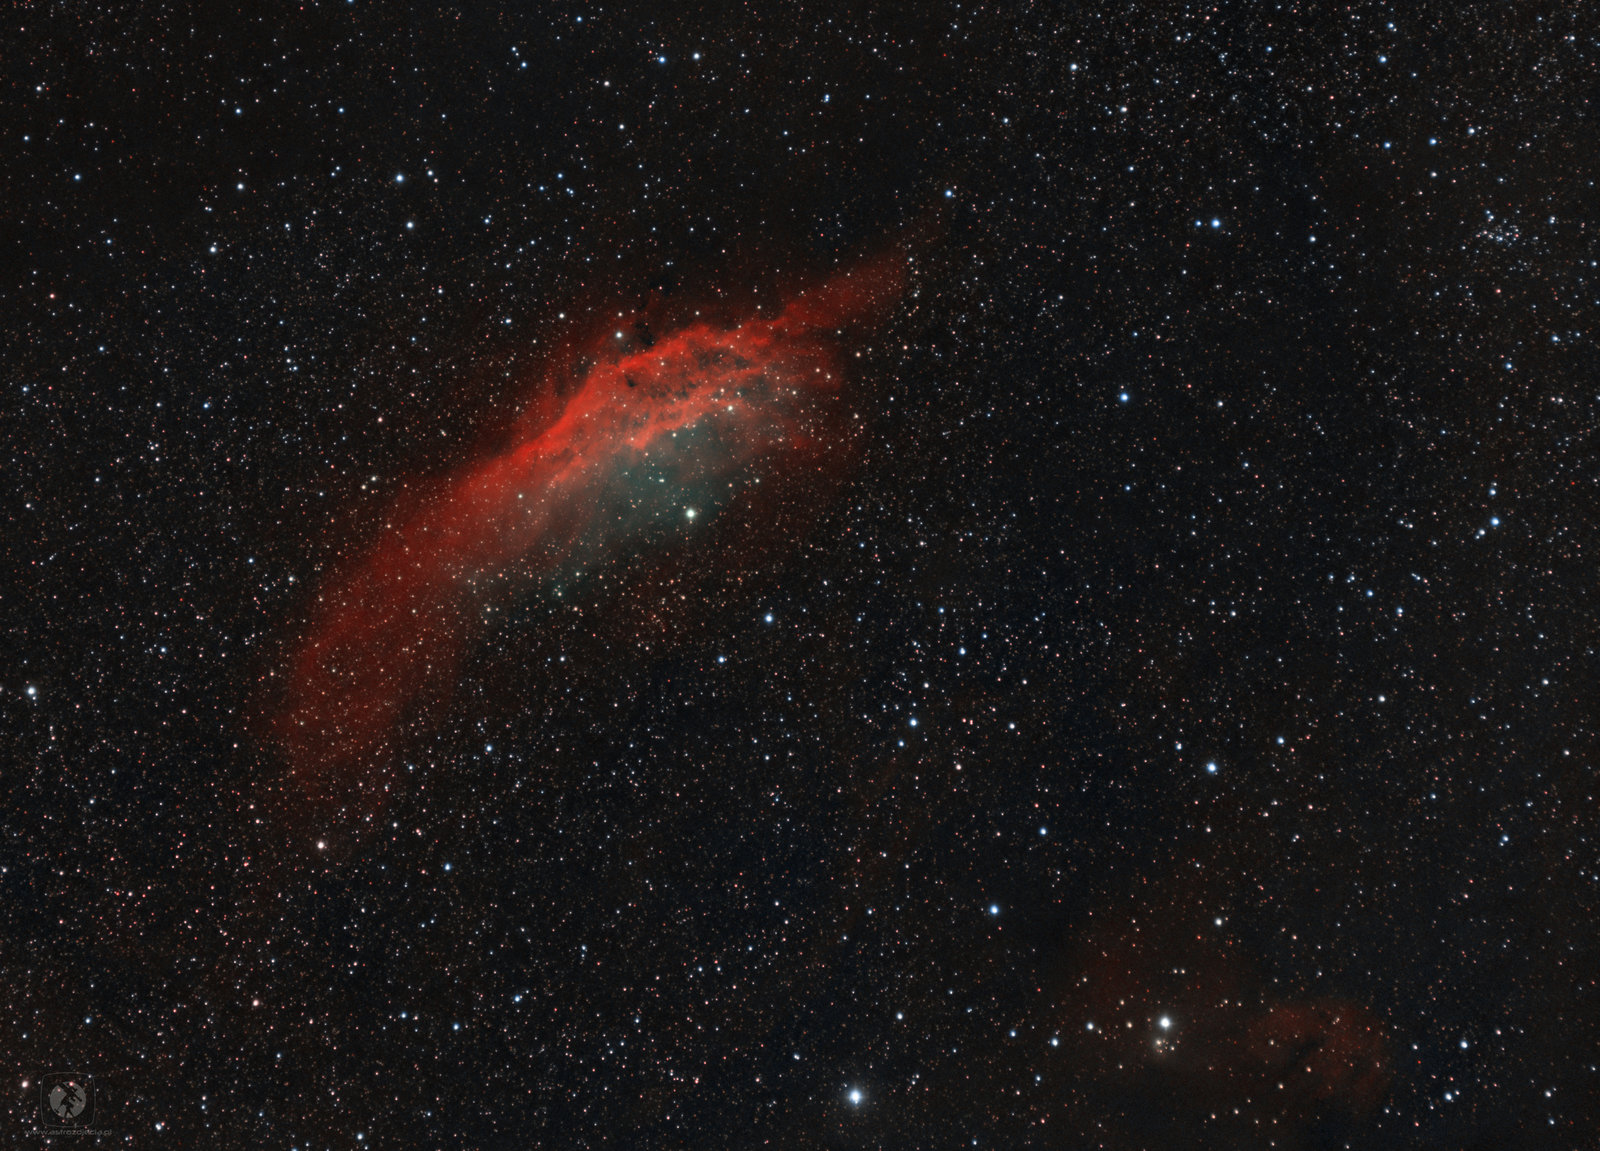 003-NGC1499.thumb.jpg.a9abf26b465c16254110f4c9b631b303.jpg